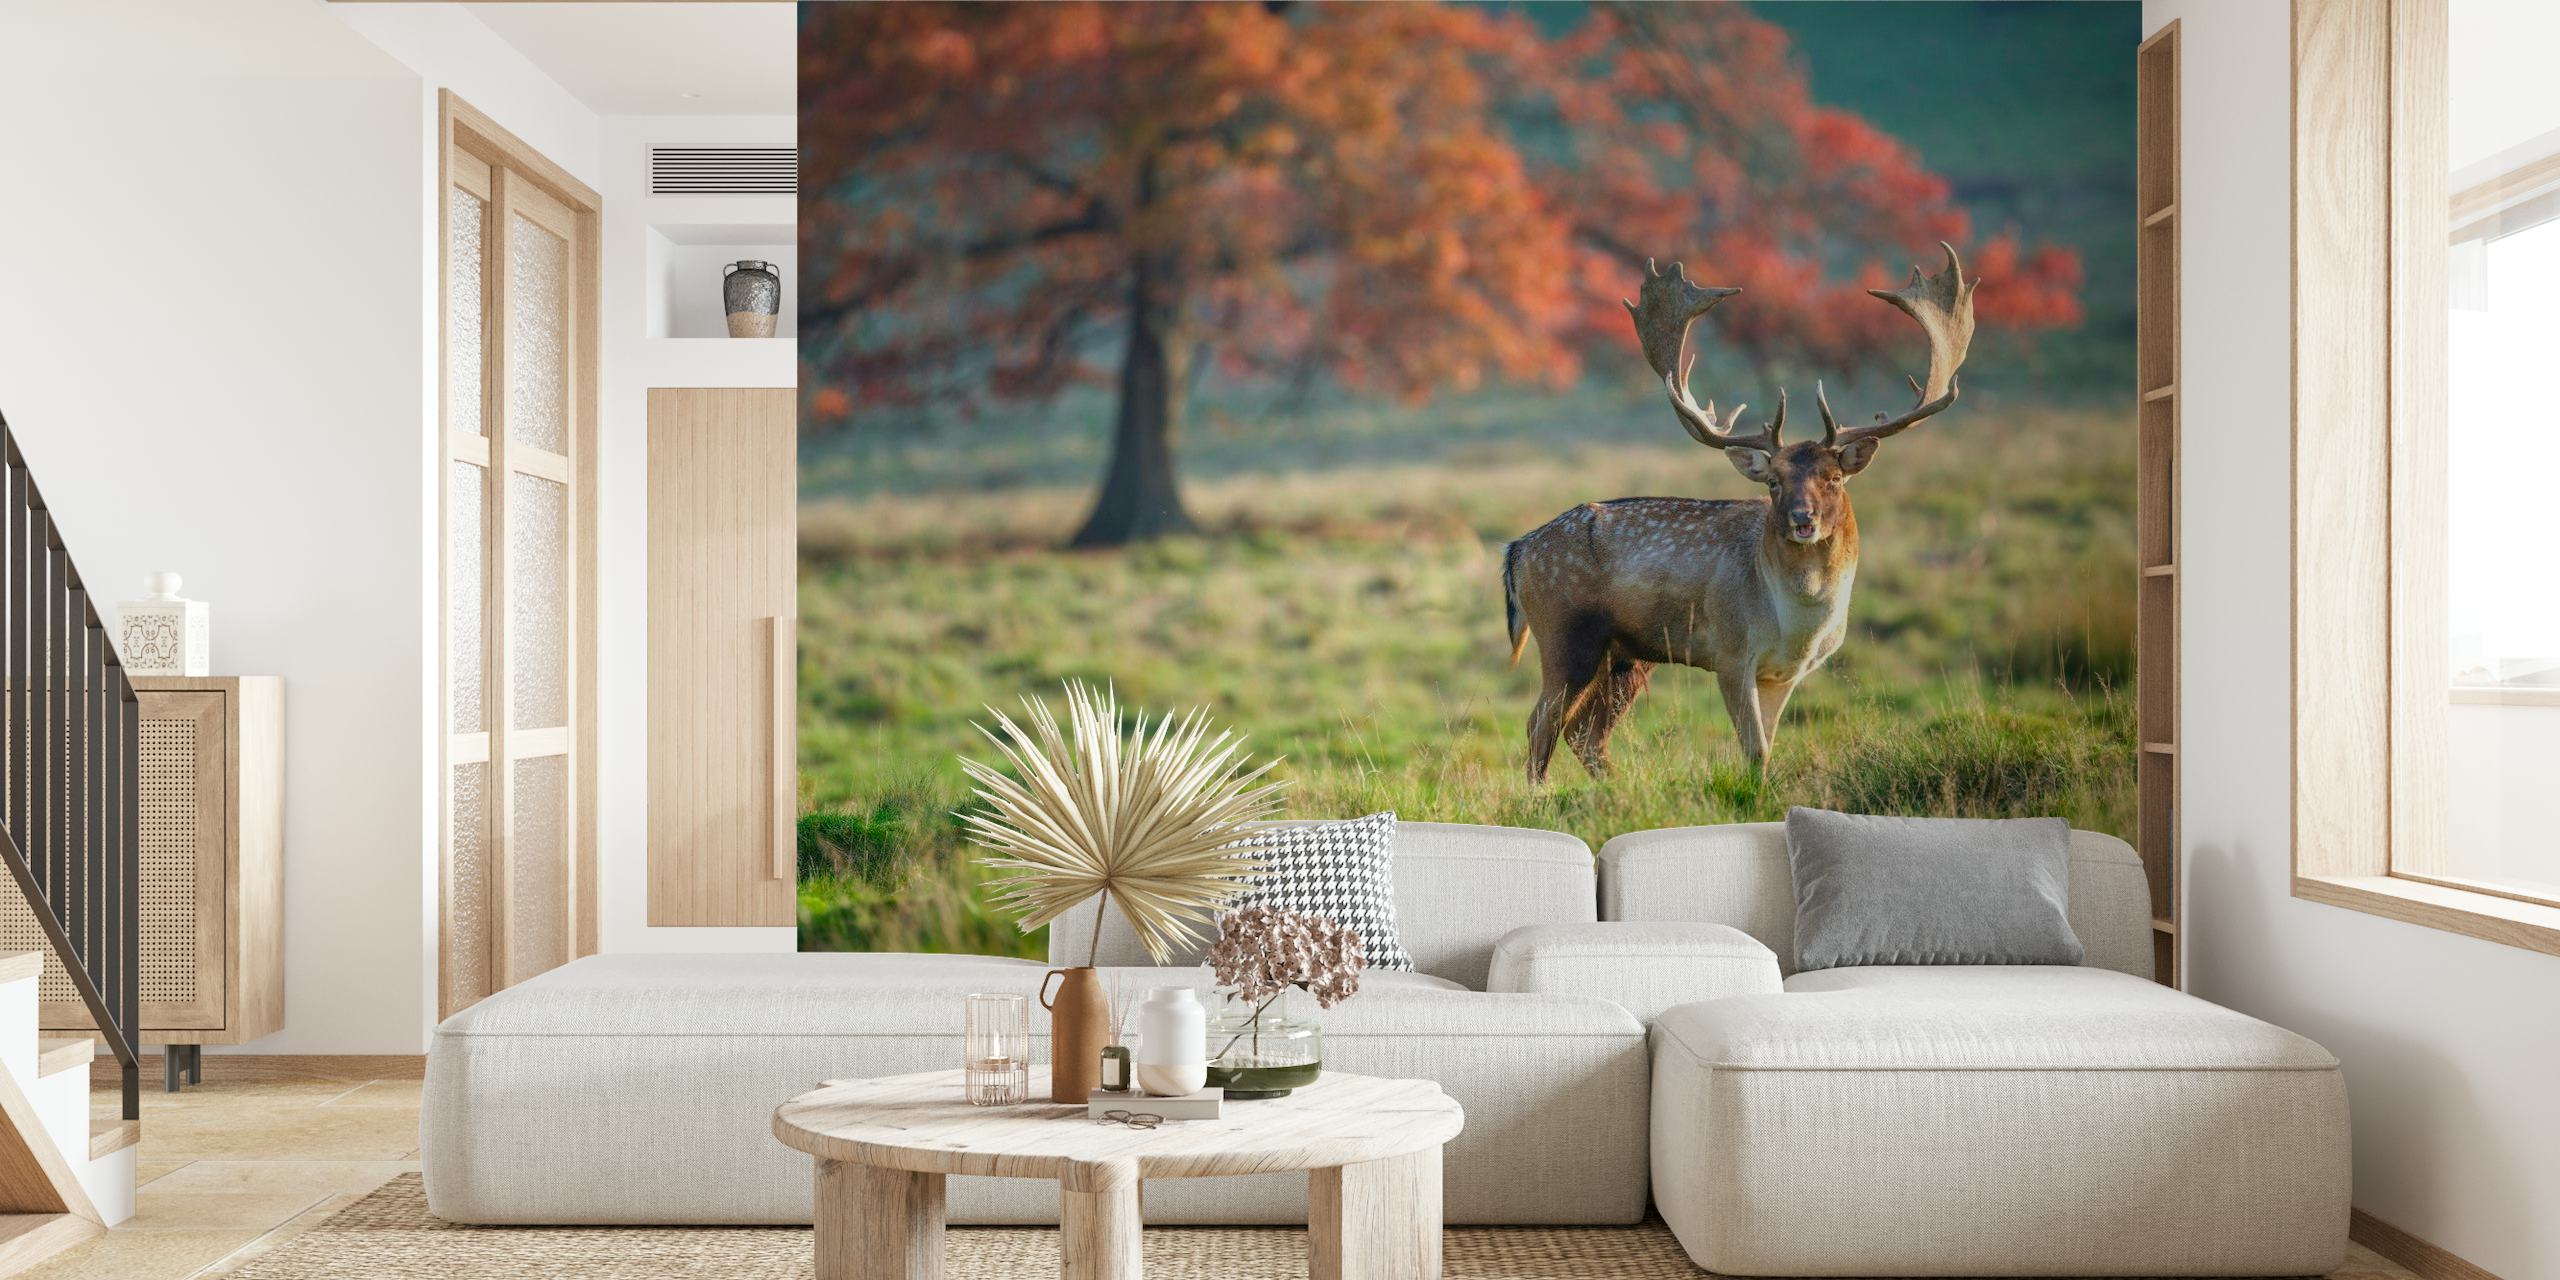 Wandbild eines majestätischen Hirsches, der auf einer farbenprächtigen Herbstwiese mit Bäumen im Hintergrund steht